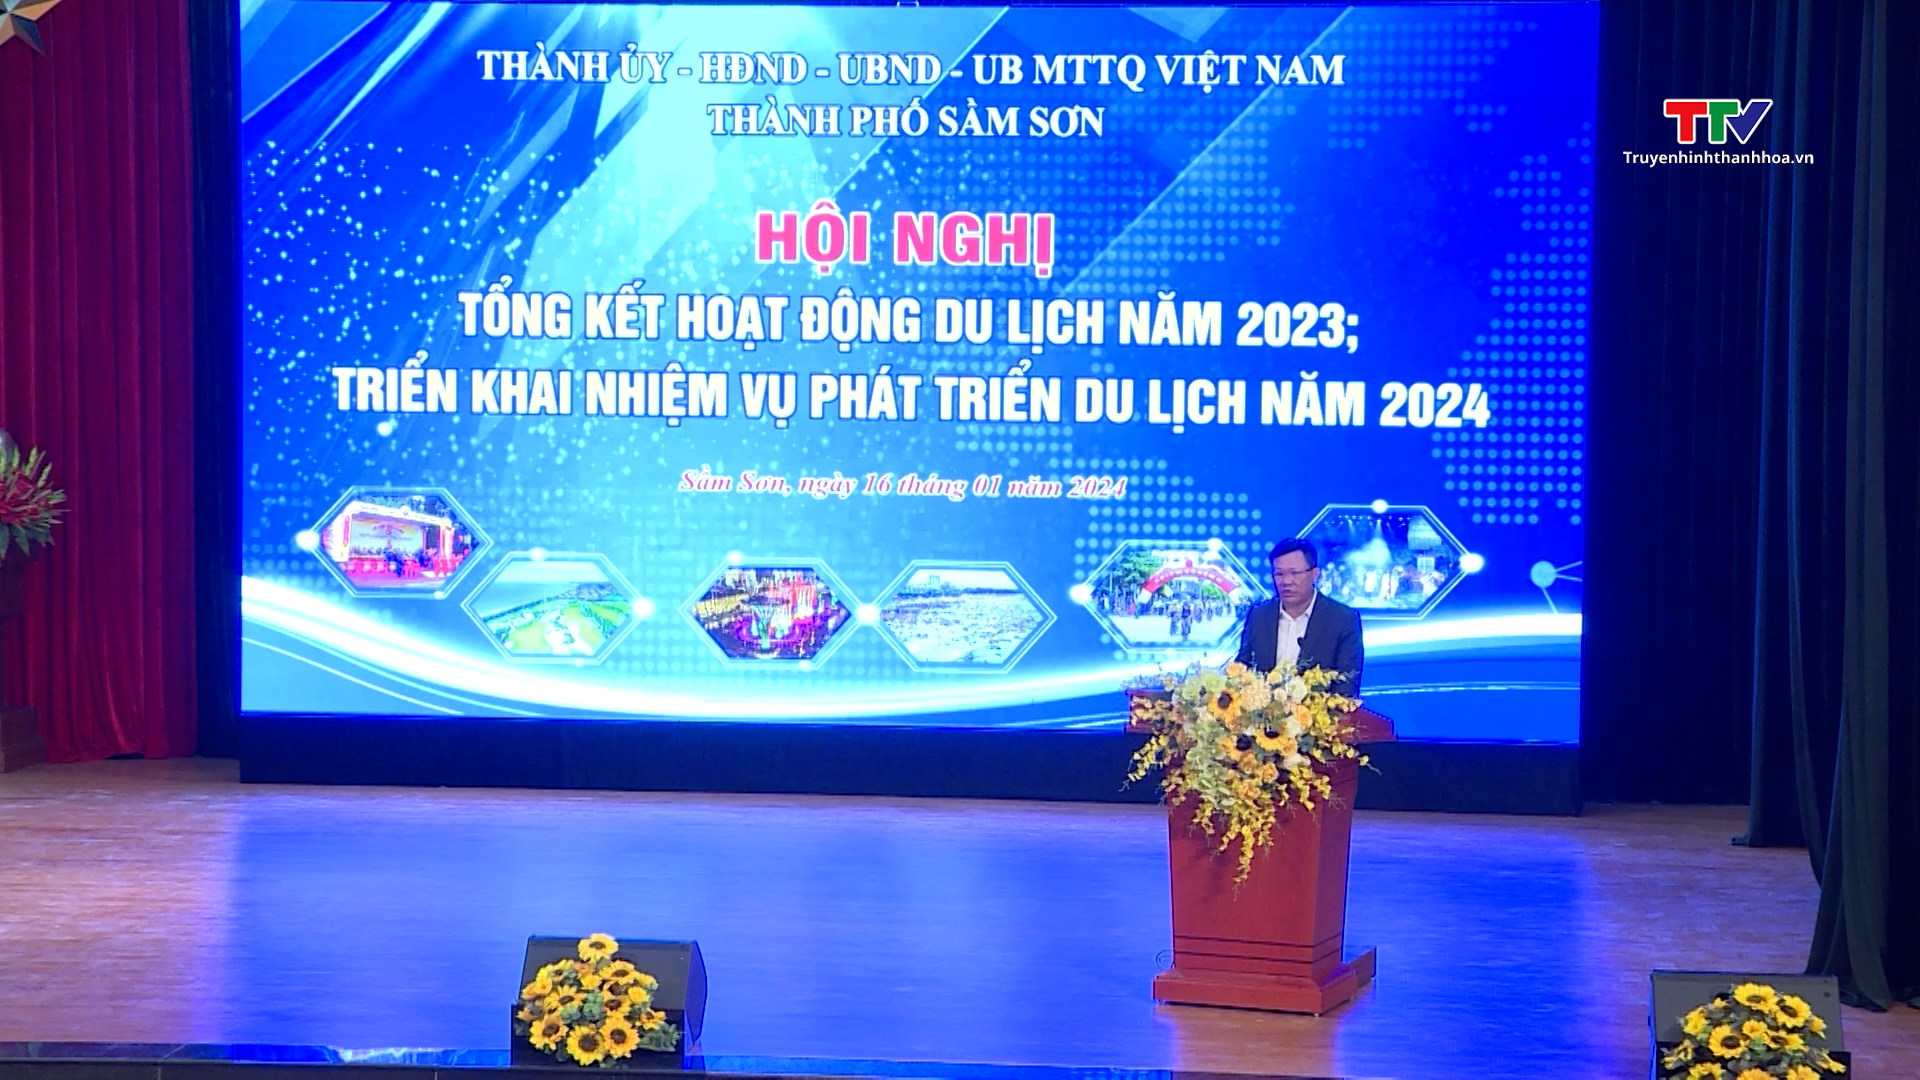 Thành phố Sầm Sơn tổng kết hoạt động du lịch năm 2023 và triển khai nhiệm vụ năm 2024- Ảnh 3.